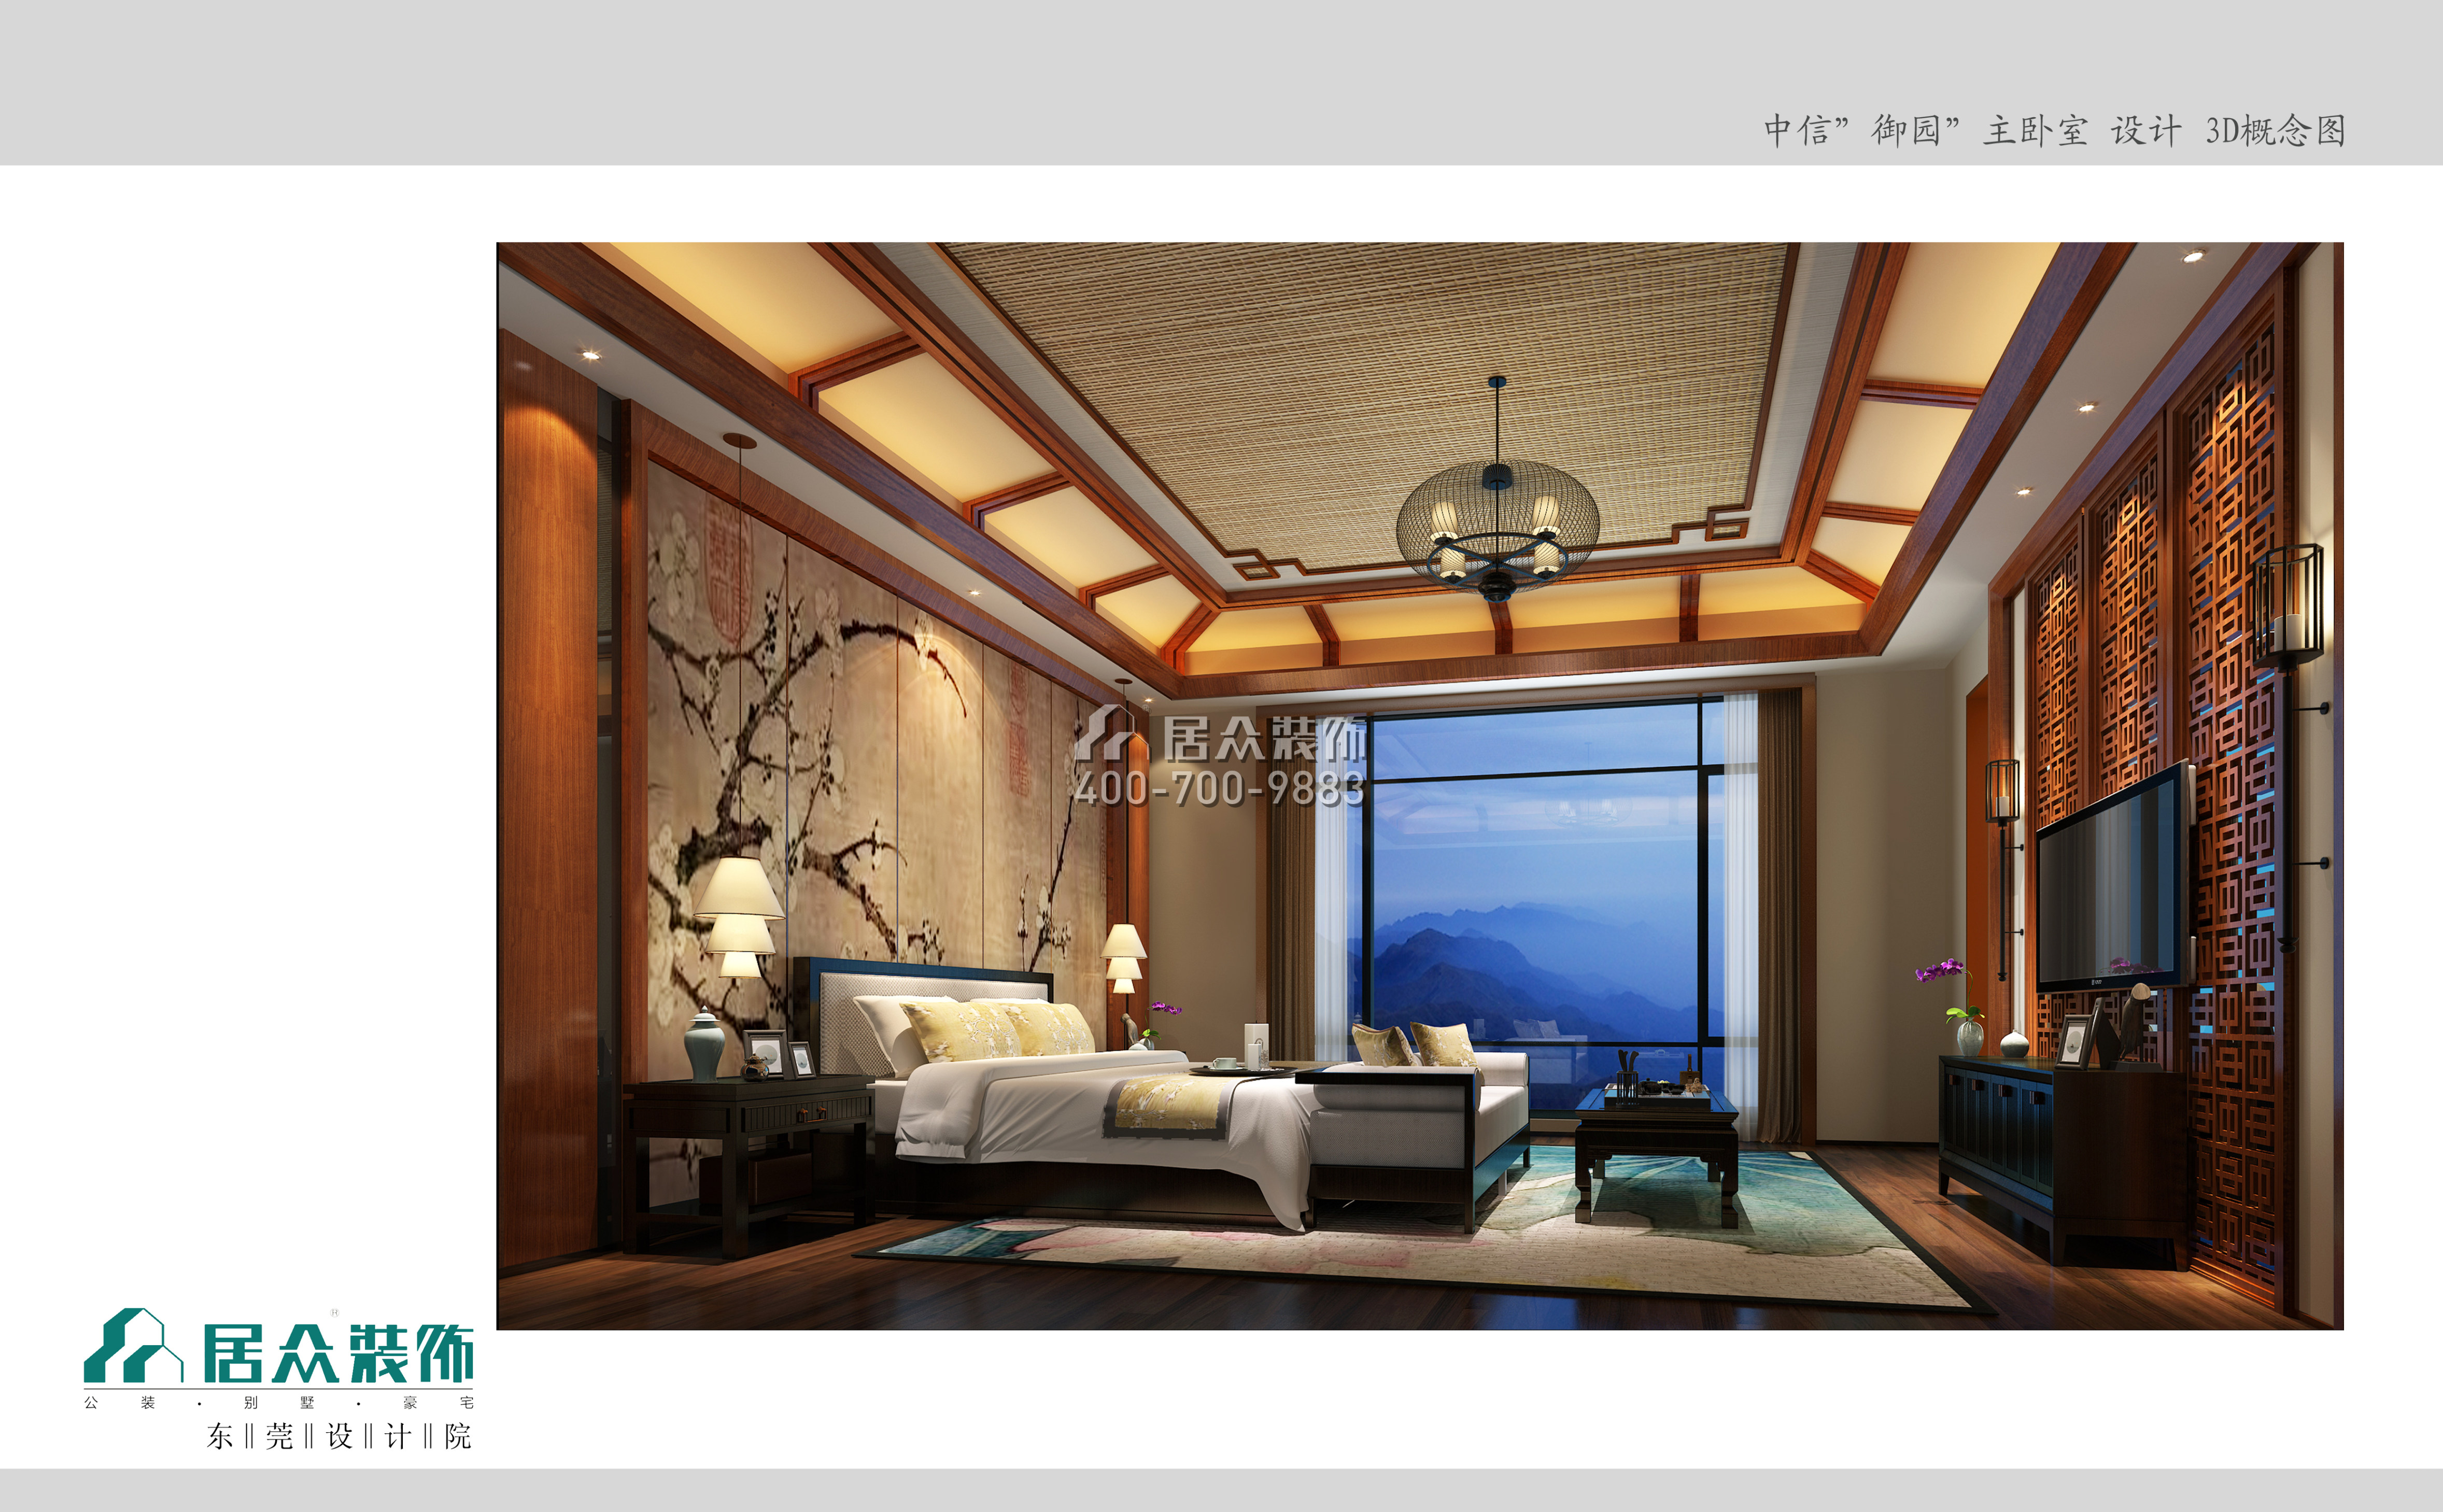 中信御园800平方米中式风格别墅户型卧室装修效果图